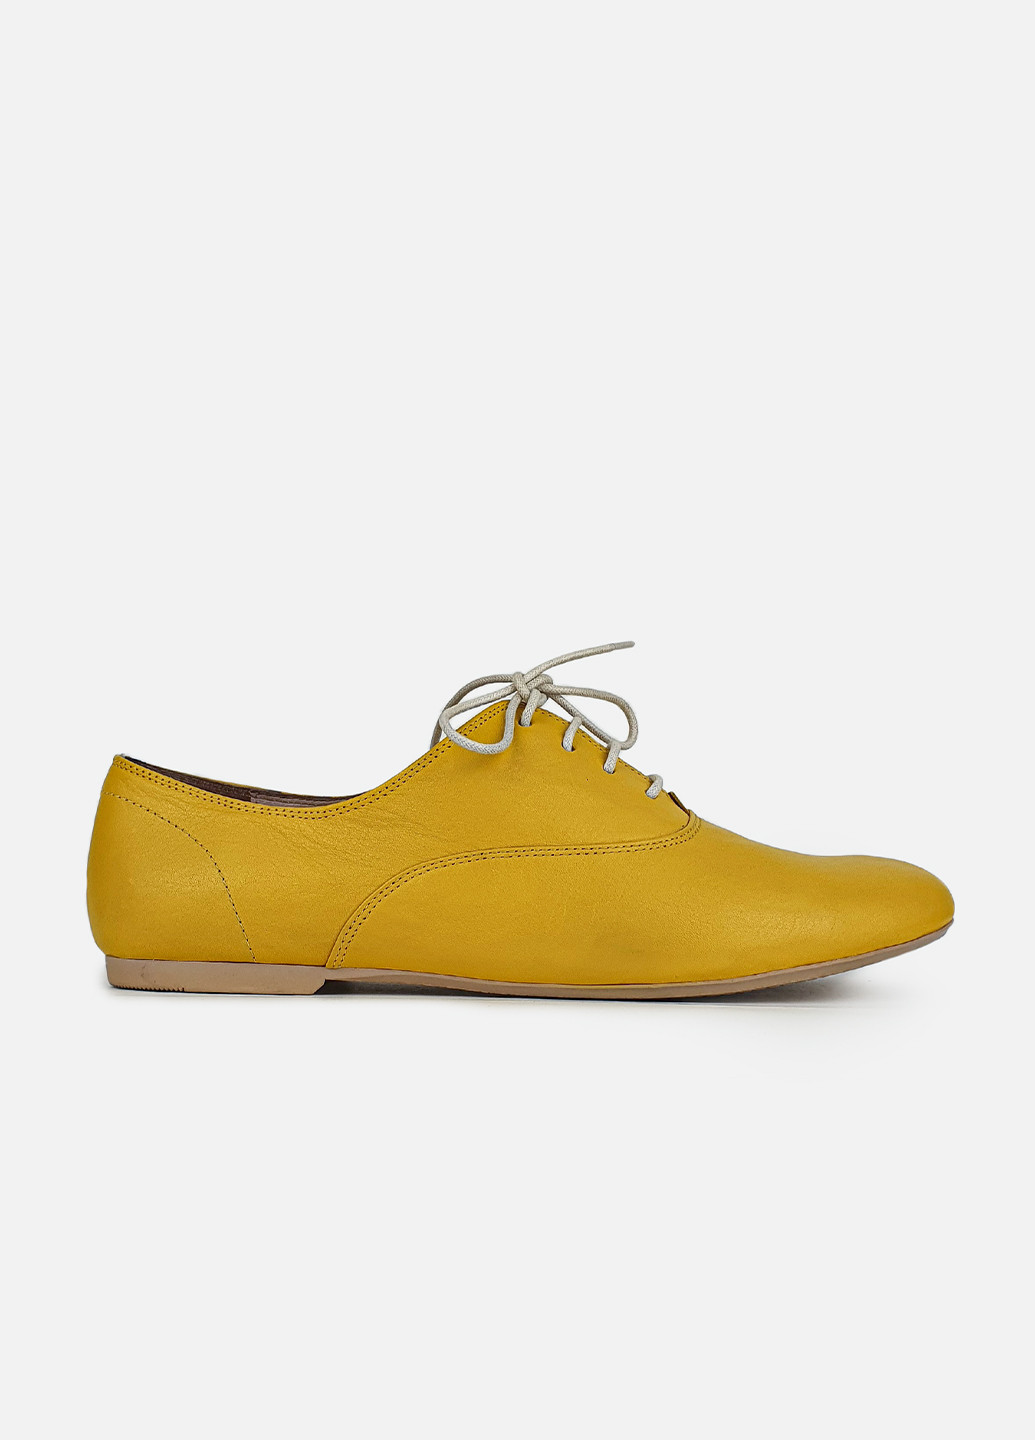 Туфли оксфорды женские желтые кожаные осенние весенние Dino Bigioni